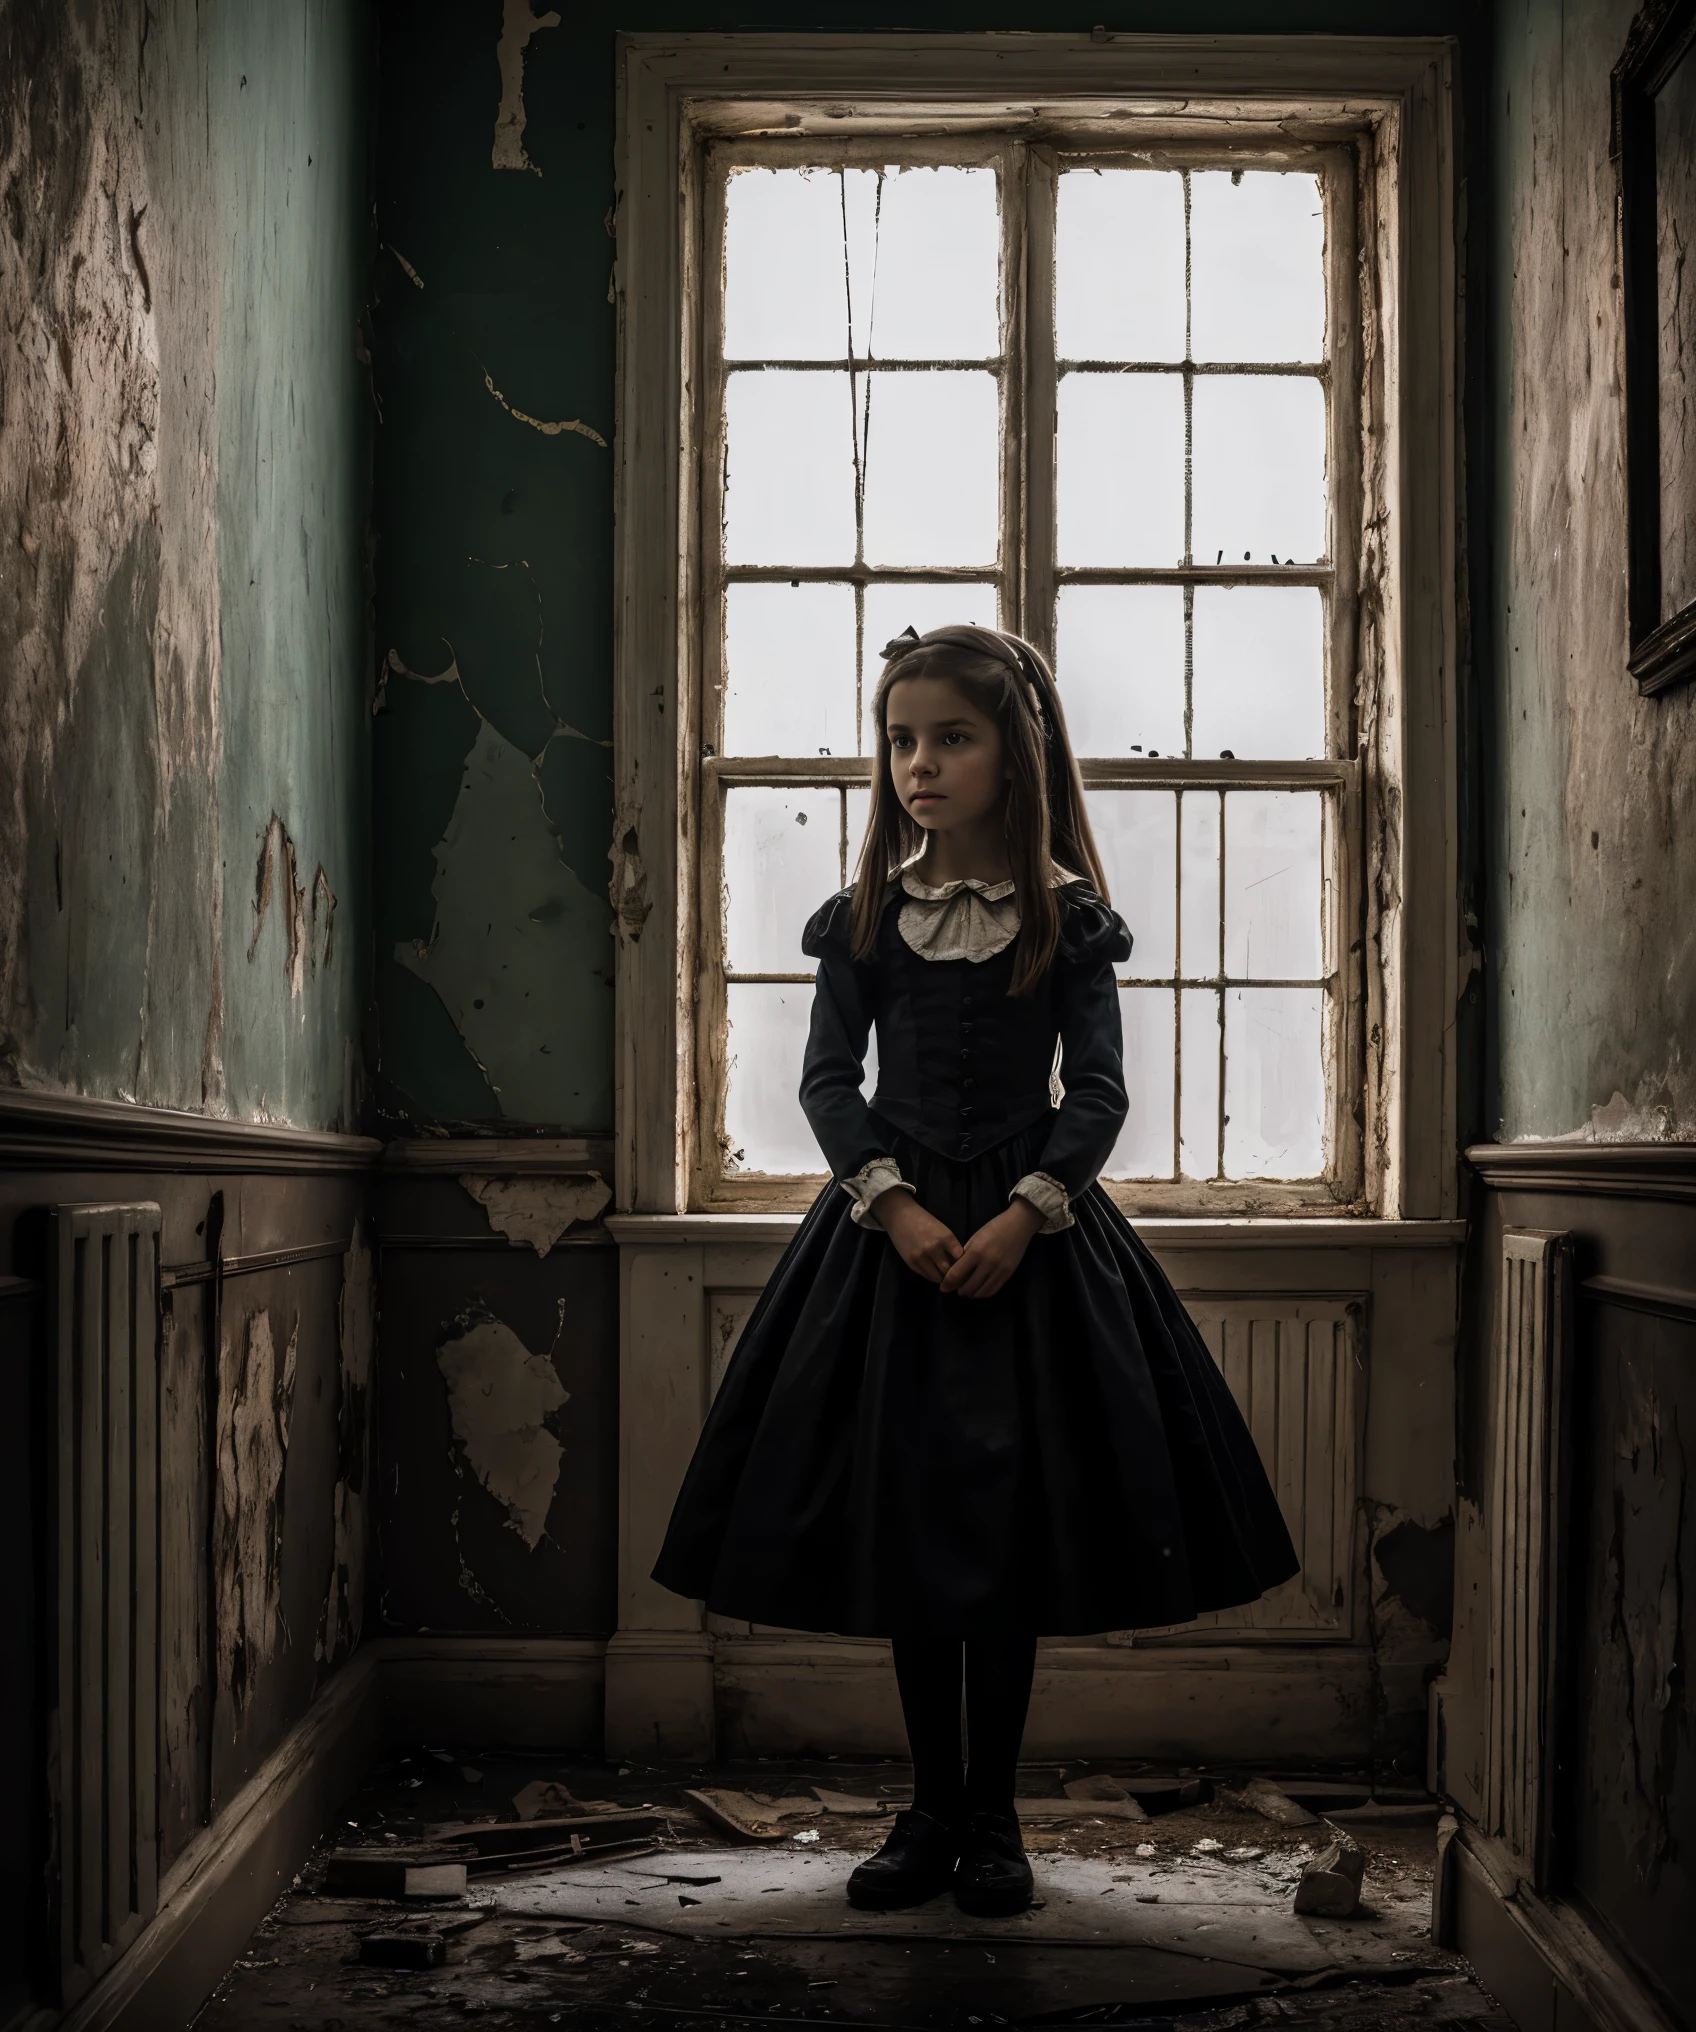 非常详细, 精神病院里一名年轻女孩的逼真照片, 来自的爱丽丝 "爱丽丝梦游仙境", 阴暗而诡异的氛围, 复杂的细节，如破裂的墙壁和剥落的油漆, 灵感来自刘易斯·卡罗尔和蒂姆·伯顿的作品.